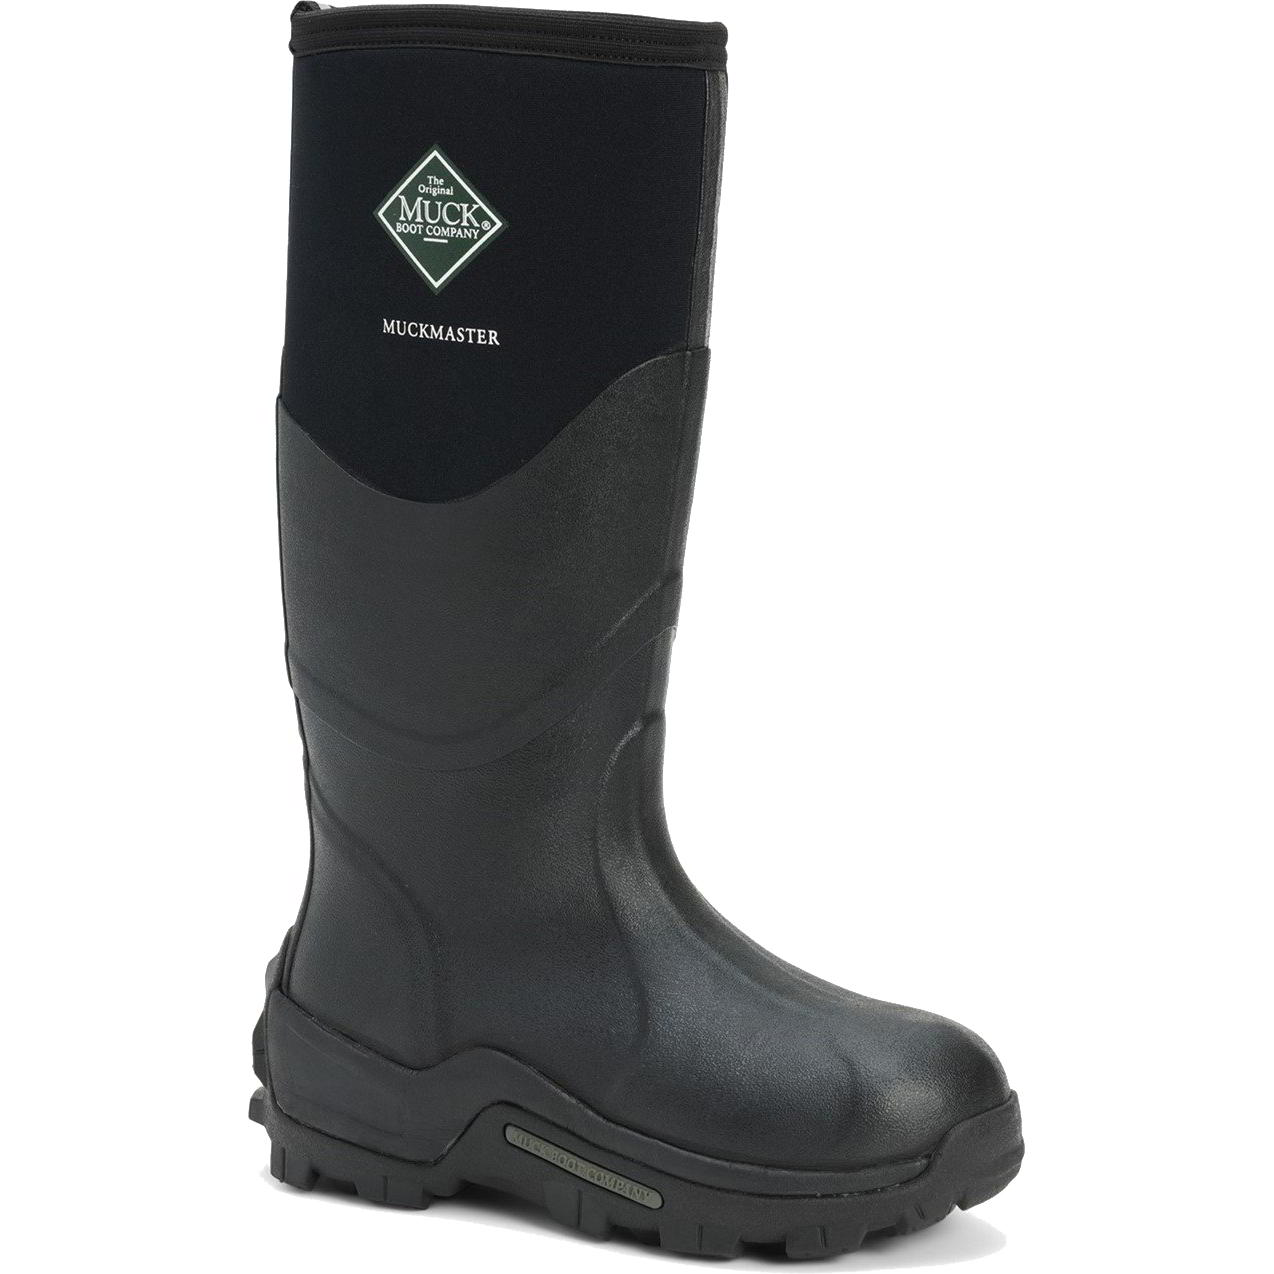 Muck Boots Mens Womens Master Neoprene Wellies Rain - UK 13 Black 2951